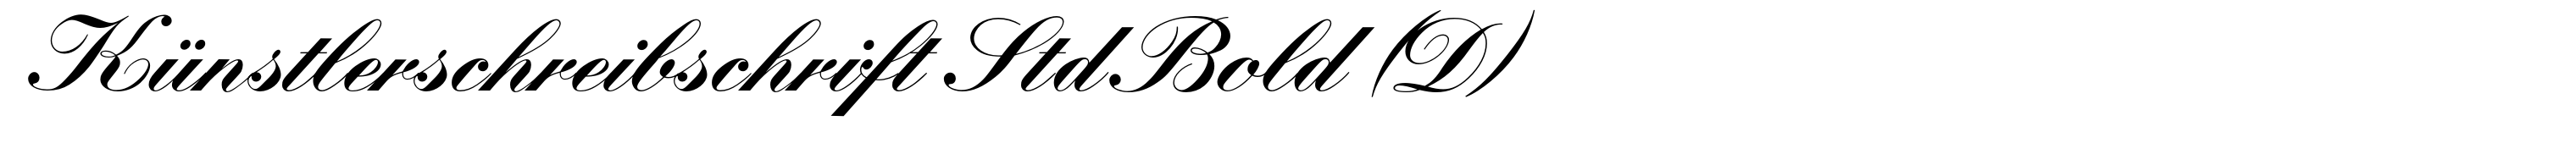 Künstlerschreibschrift Std Bold (D)